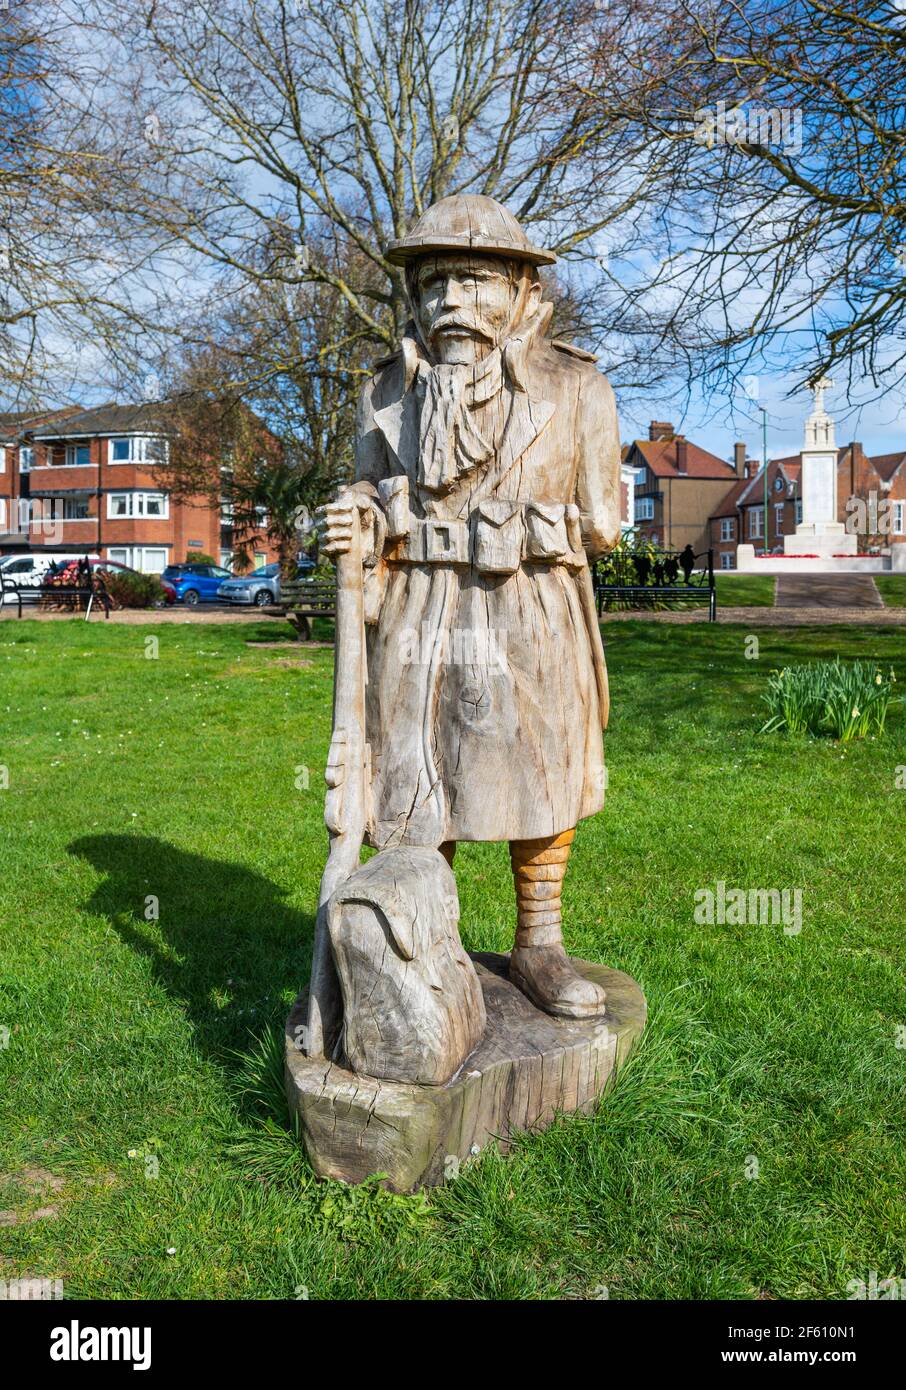 Sculpture sur tronçonneuse en bois par Simon Groves d'un soldat solitaire en souvenir des soldats morts de la première Guerre mondiale à Caffyns Field, Littlehampton, West Sussex, Royaume-Uni. Banque D'Images